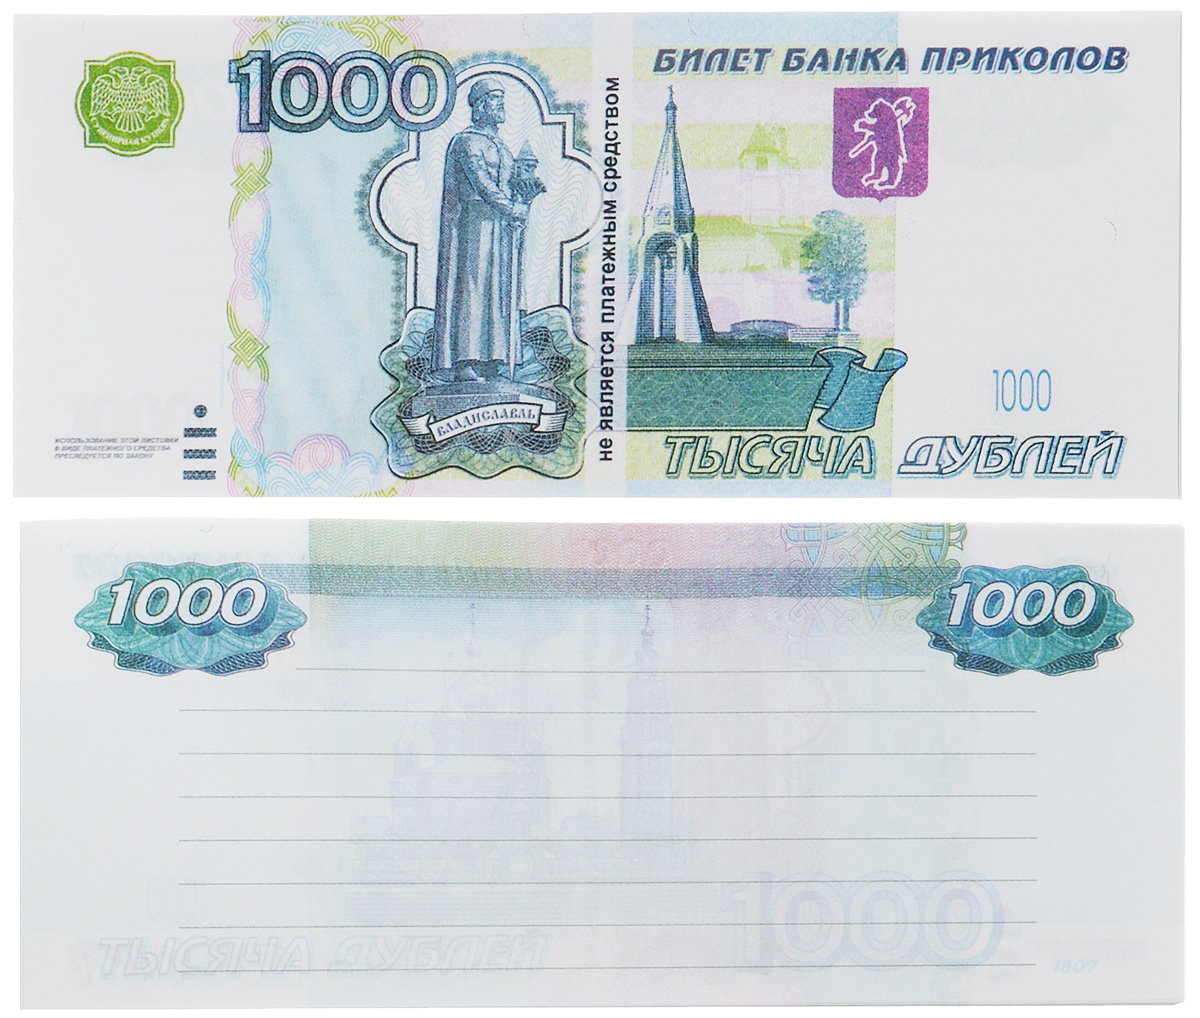 1000 рублей в магазинах